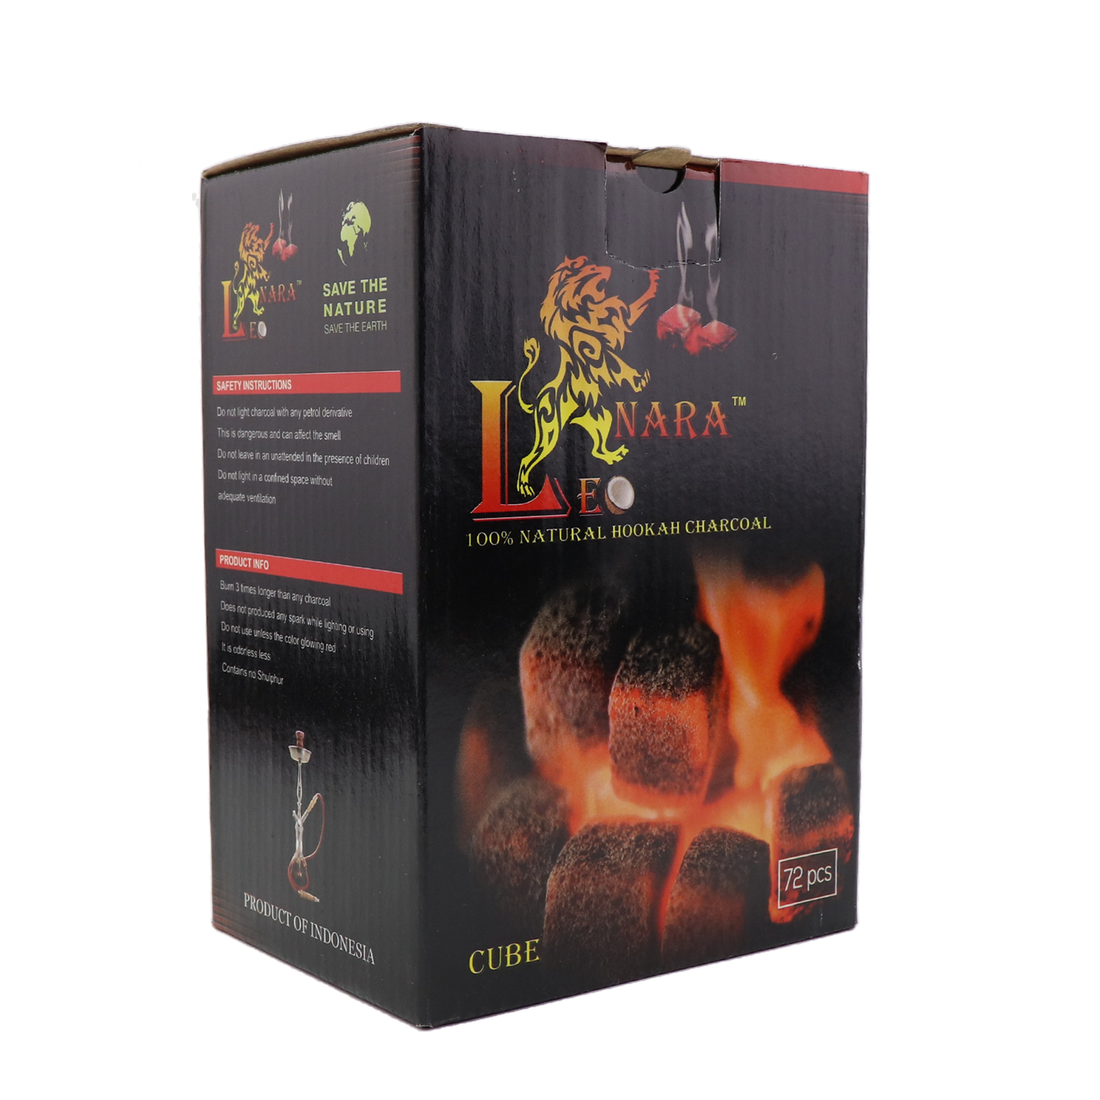 Leonara Coconut Charcoals 1/2 KG - 3 KG